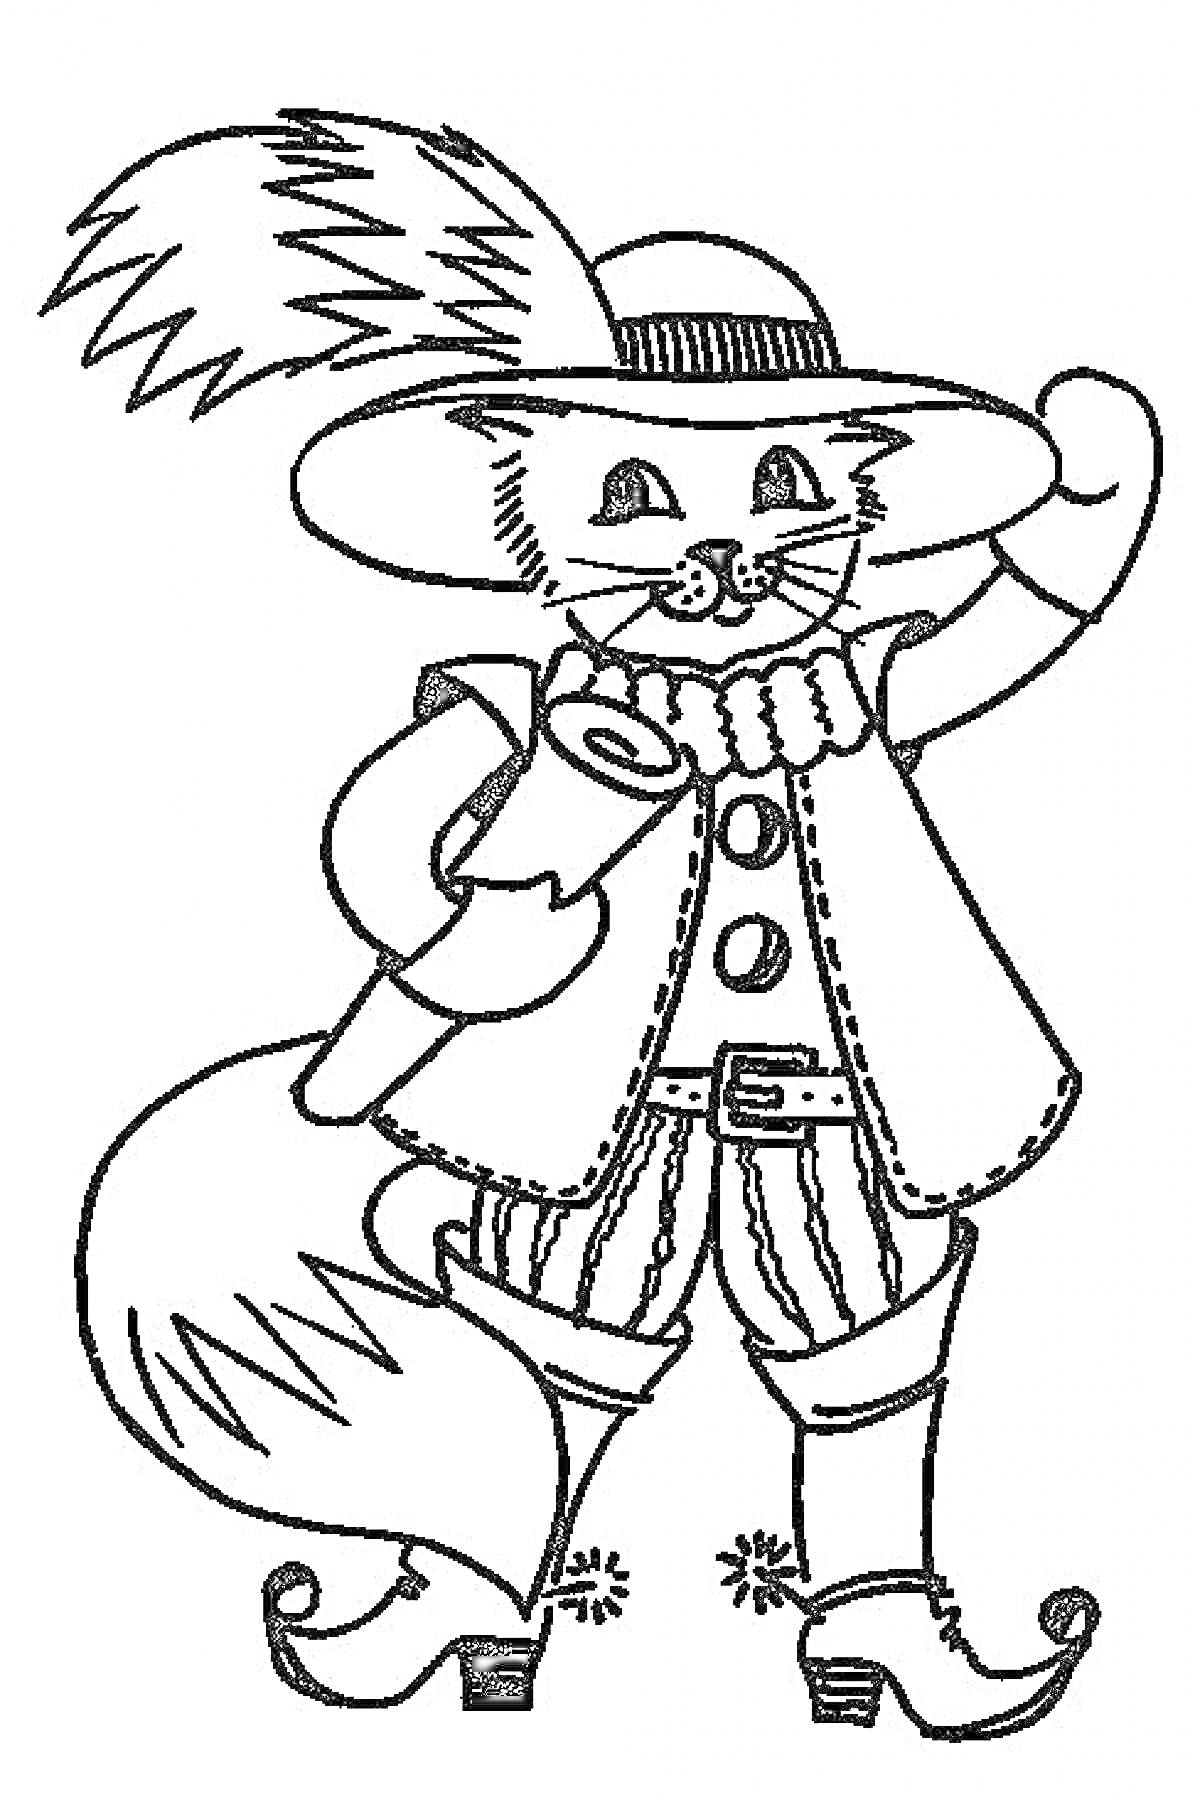 Раскраска Кот в сапогах с пером в шляпе, свитком, жилетом и сапогами